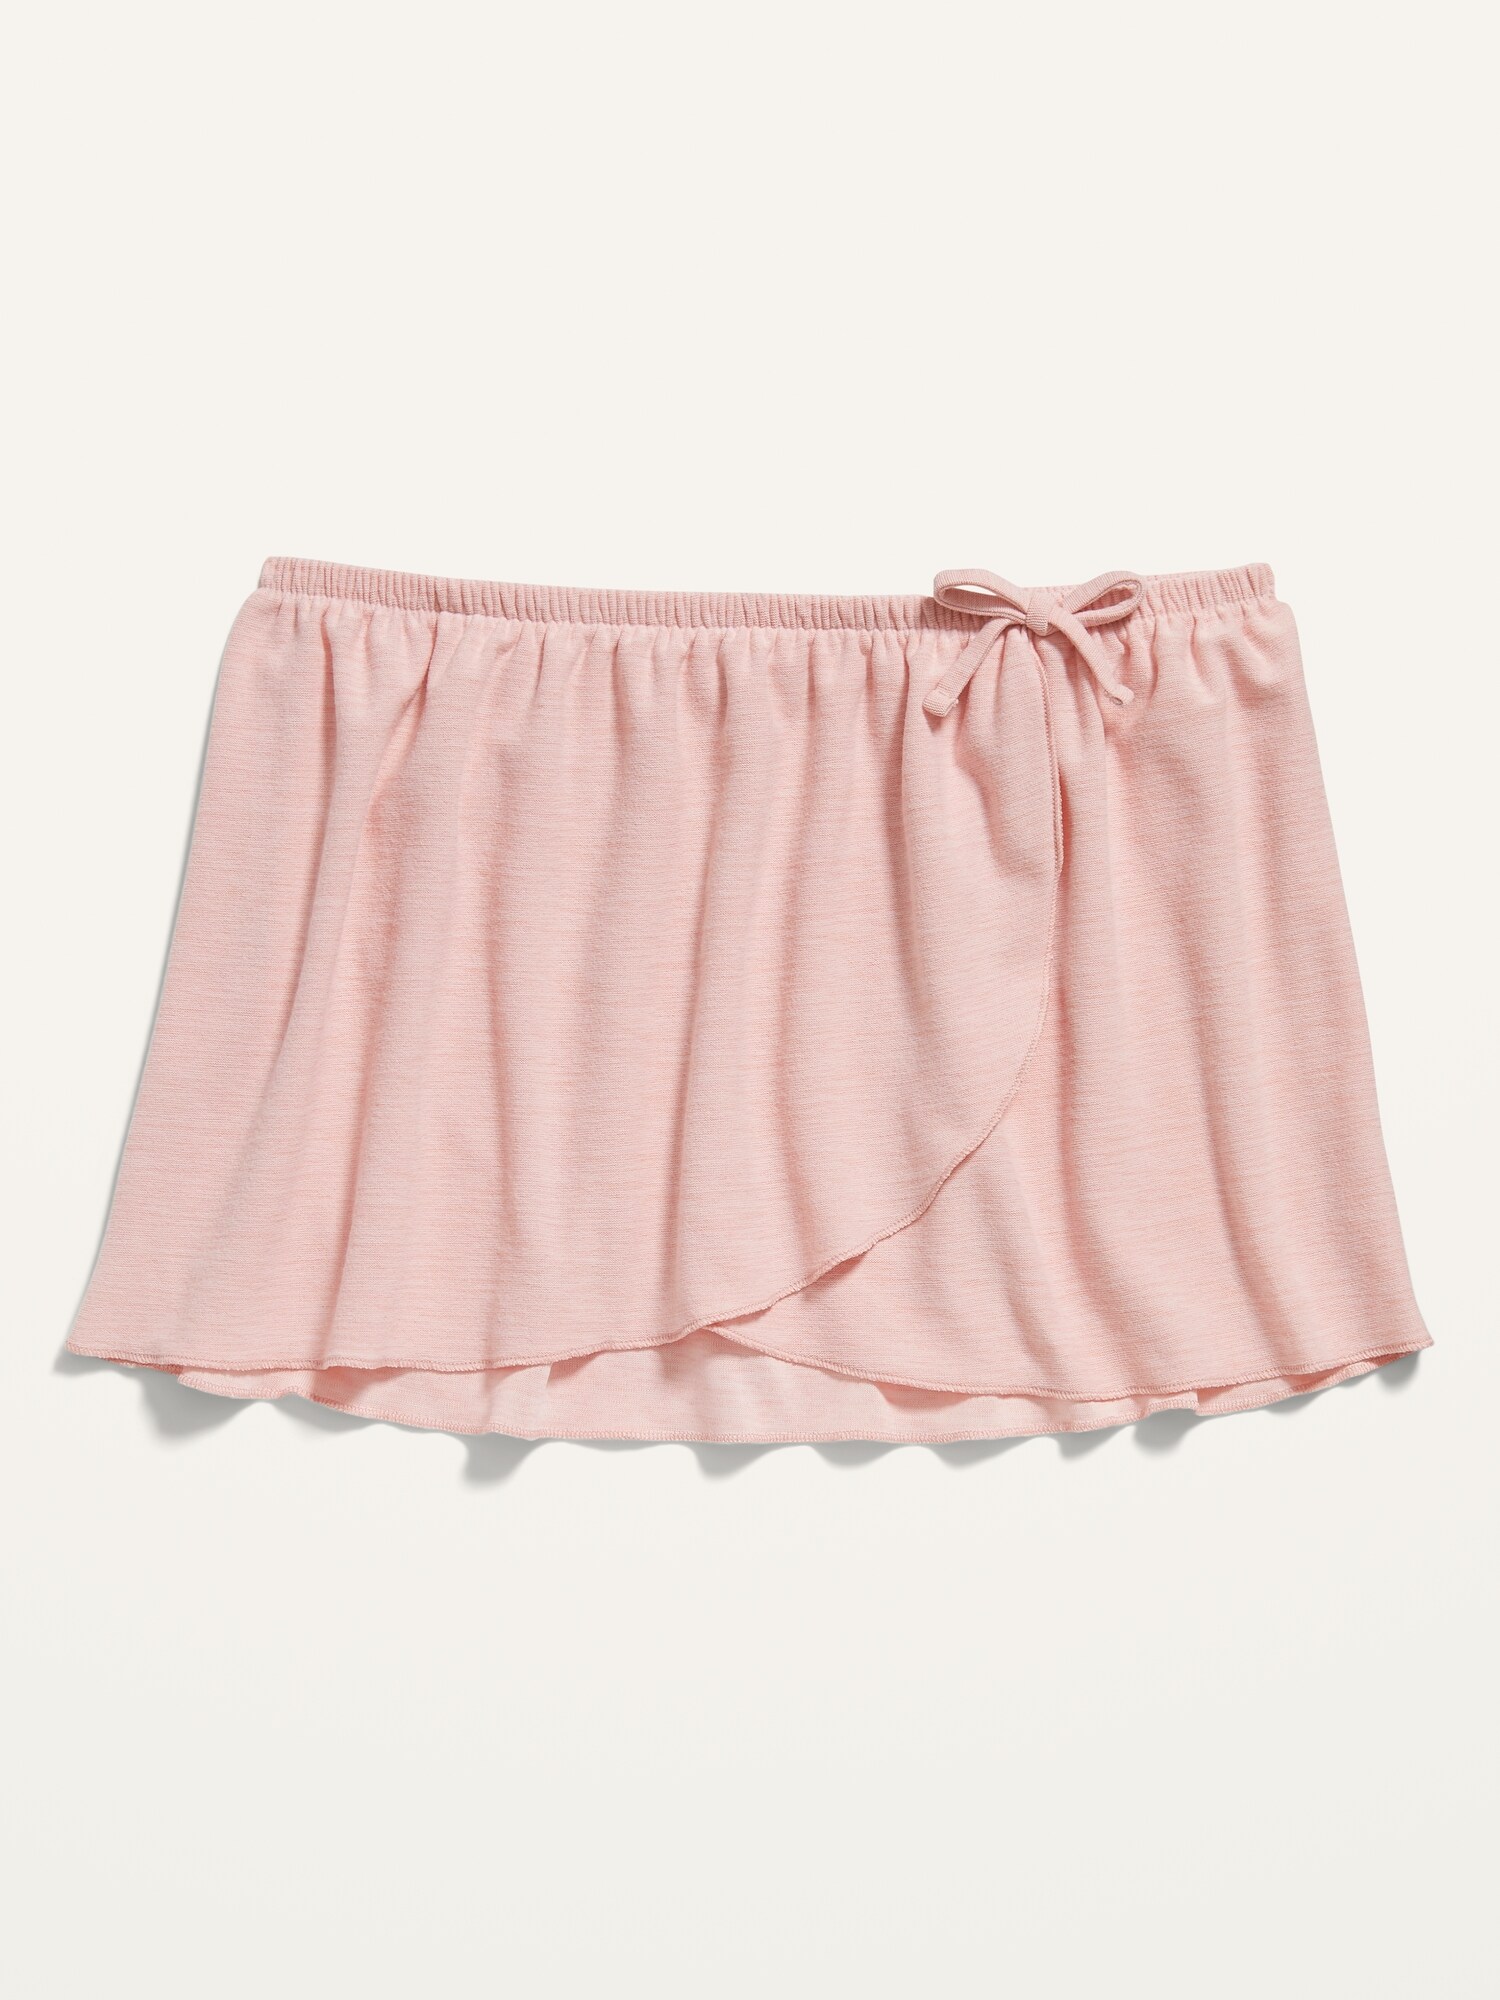 Breathe ON Faux-Wrap Dance Skirt for Toddler Girls